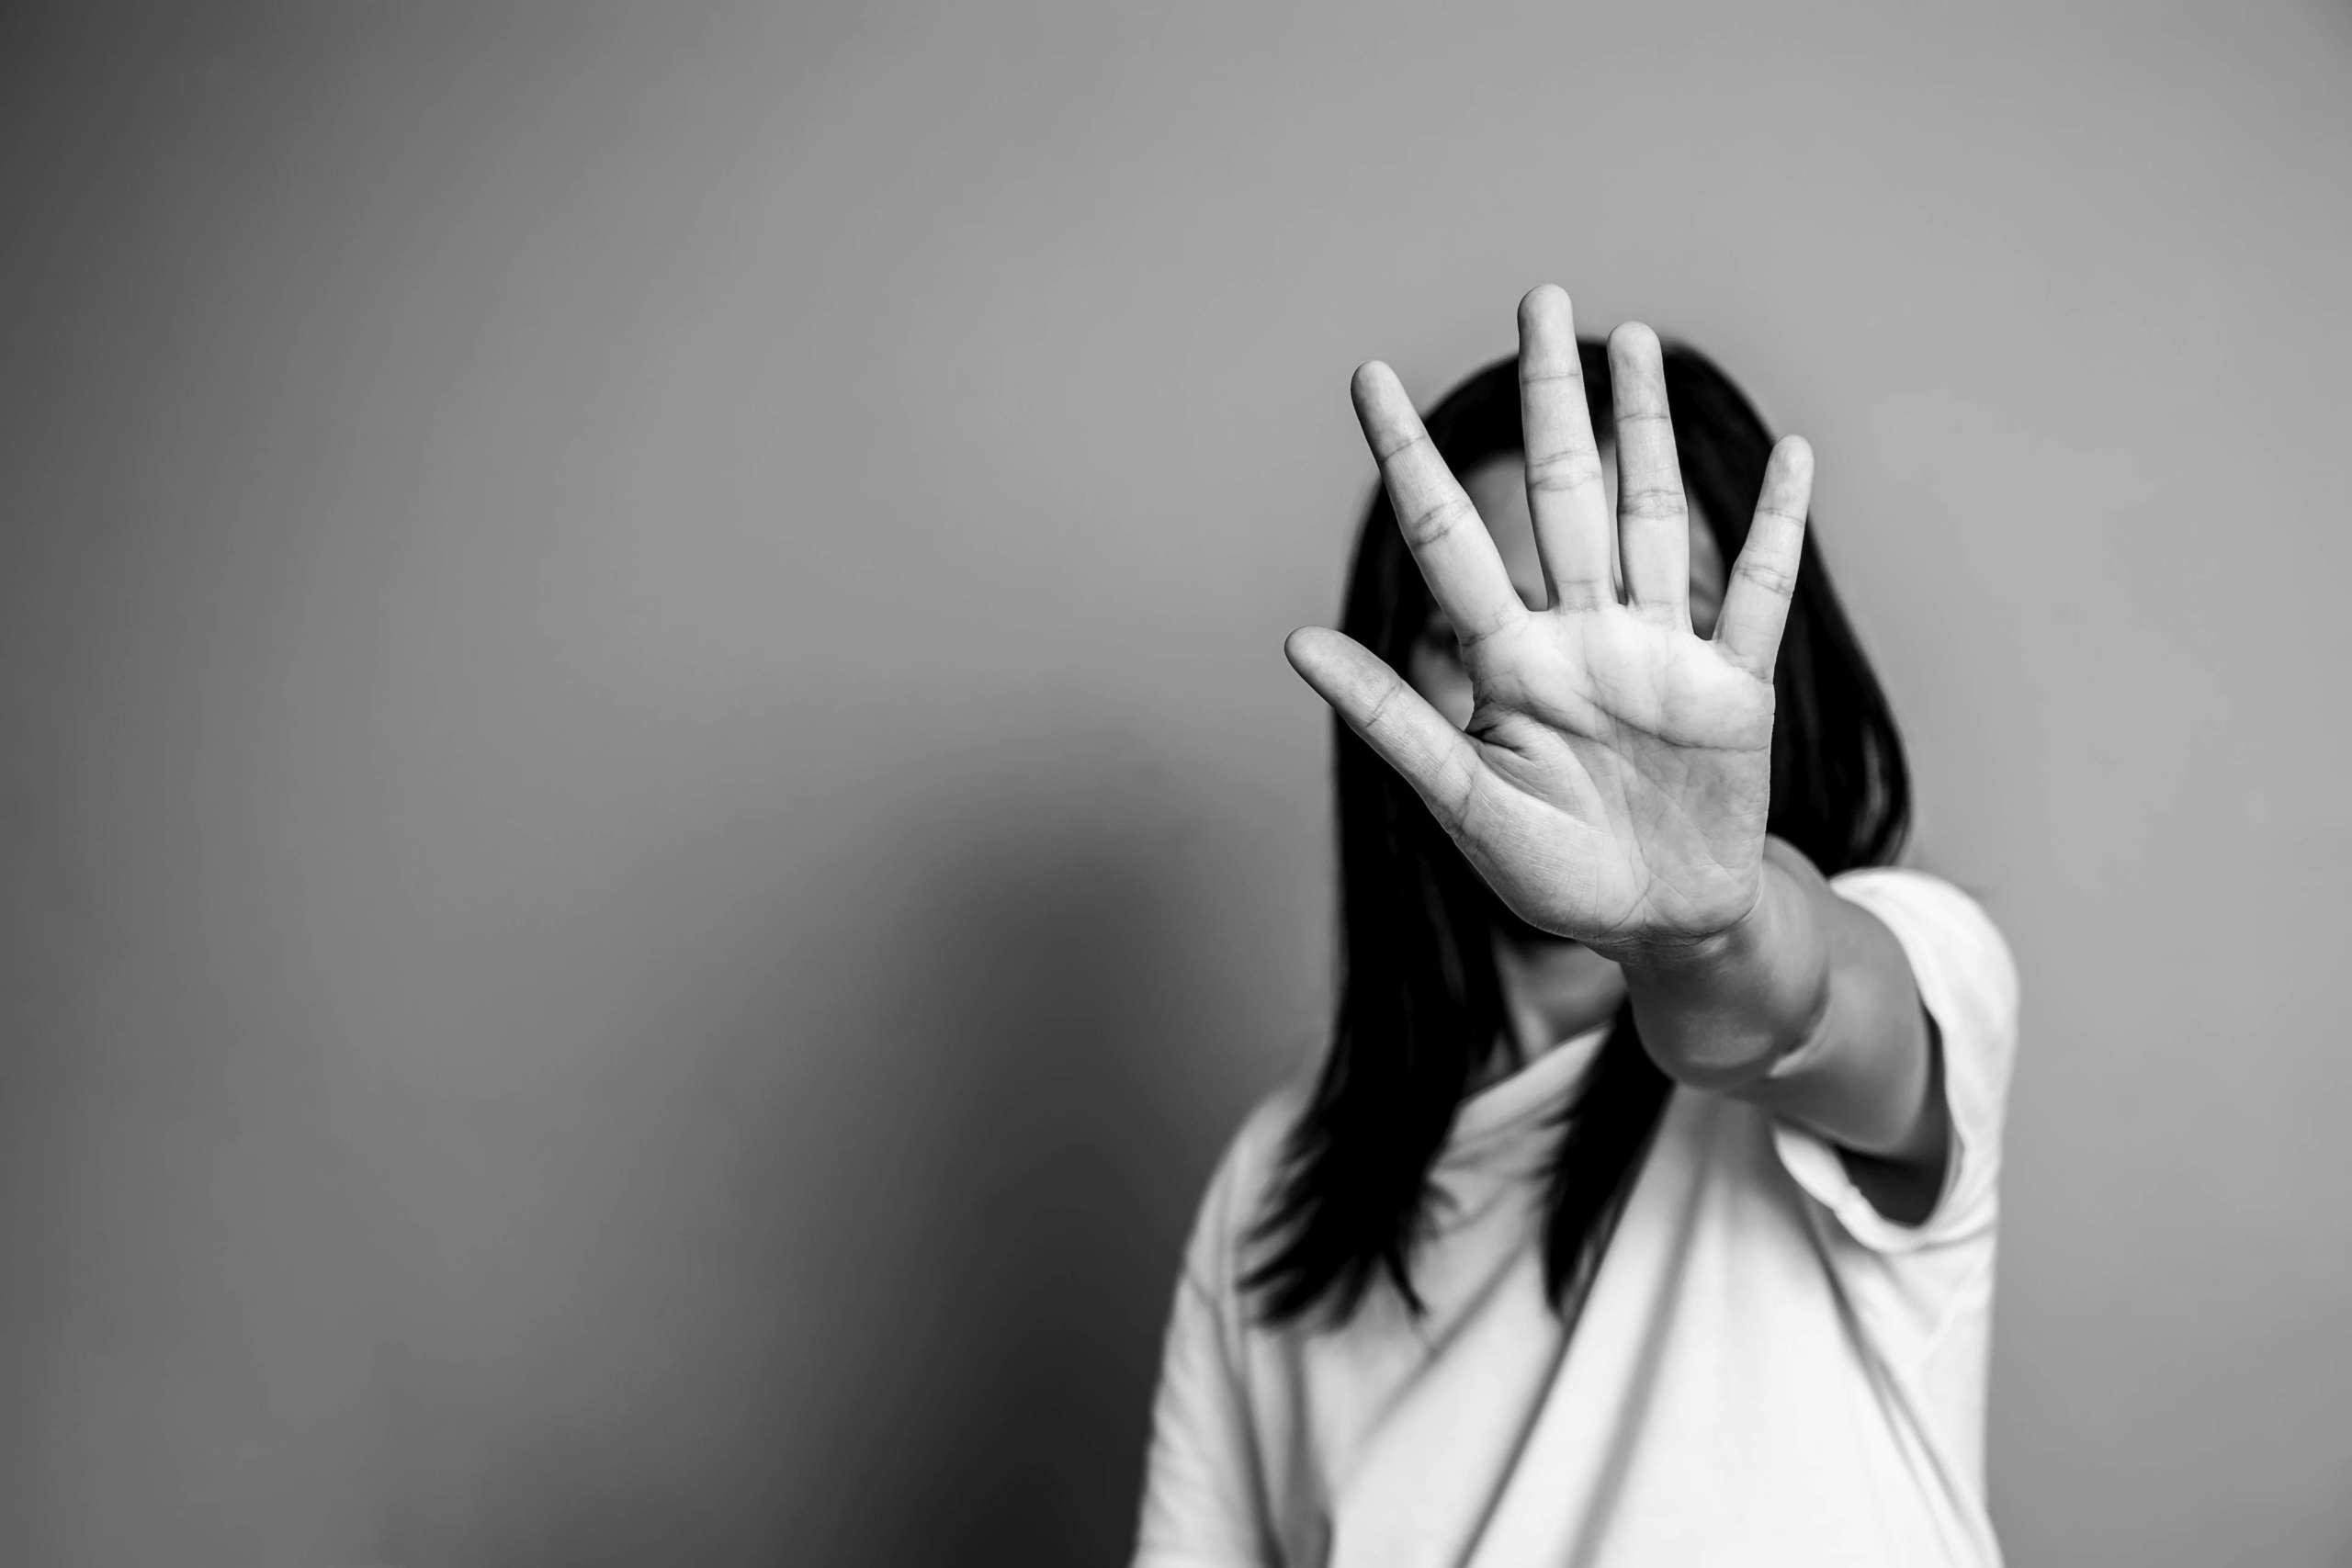 Frau hob ihre Hand, um davon abzubringen, Kampagne stoppt Gewalt gegen Frauen. Asiatische frau hob ihre hand, um mit kopierraum, schwarz-weißer farbe, davon abzubringen